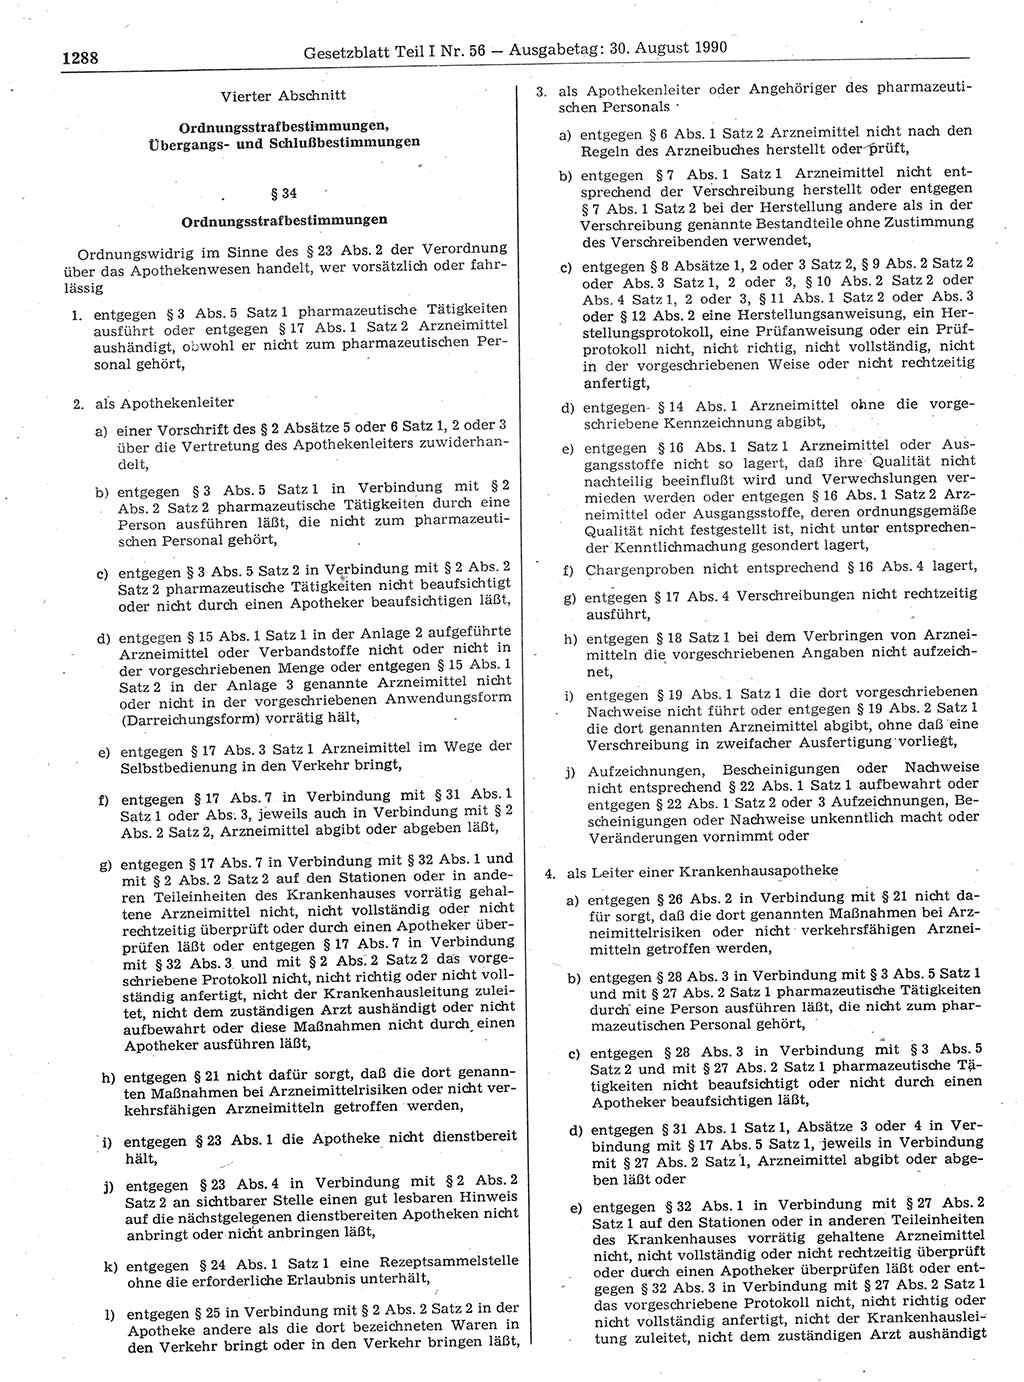 Gesetzblatt (GBl.) der Deutschen Demokratischen Republik (DDR) Teil Ⅰ 1990, Seite 1288 (GBl. DDR Ⅰ 1990, S. 1288)